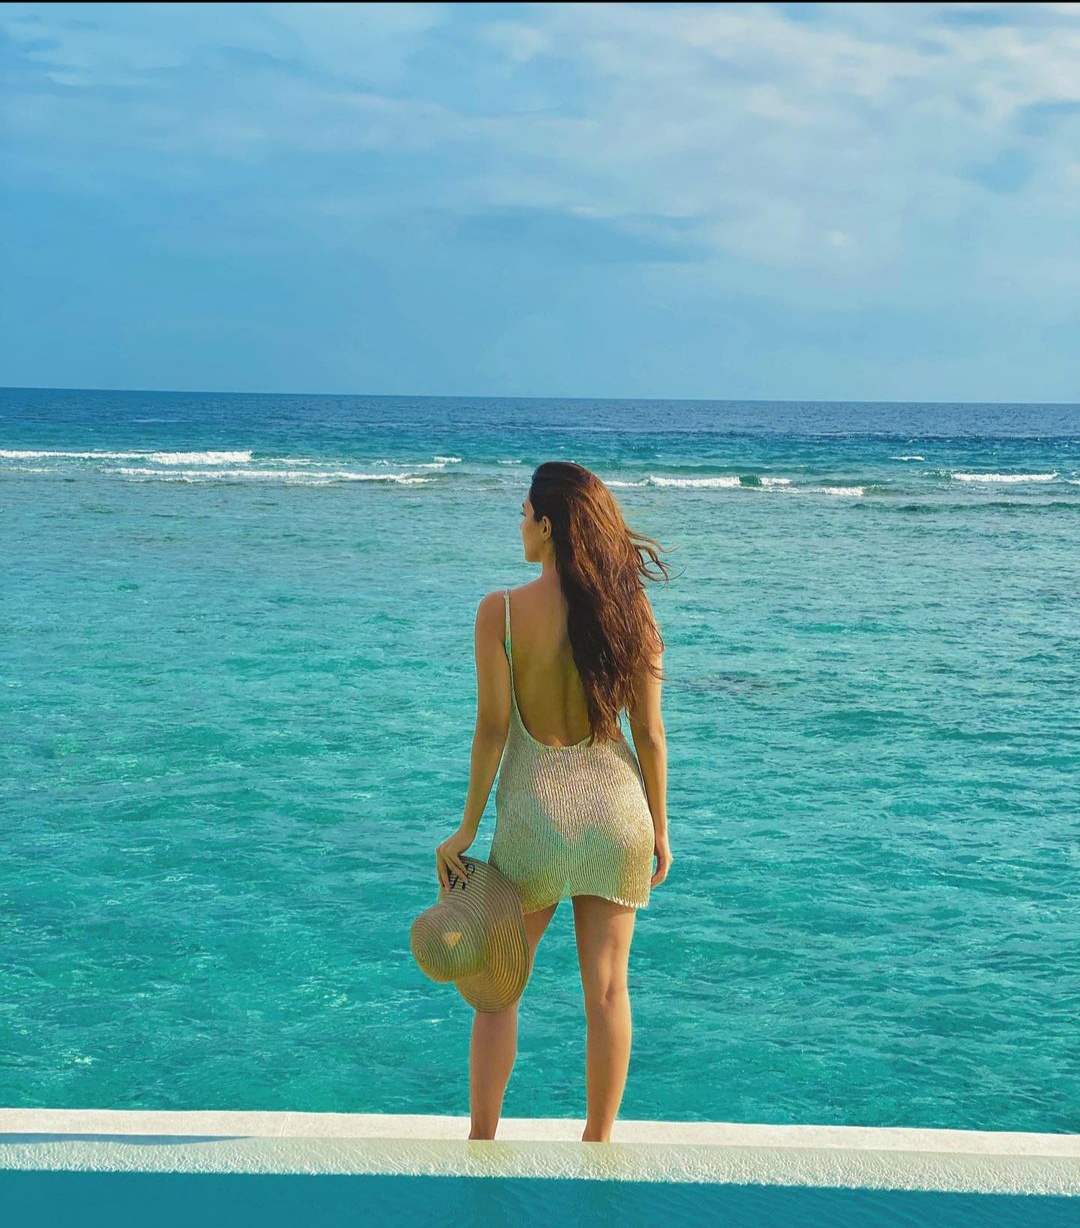 Maldives Vacation: Sidharth Malhotra and Kiara Advani share private holiday photos, fans go crazy